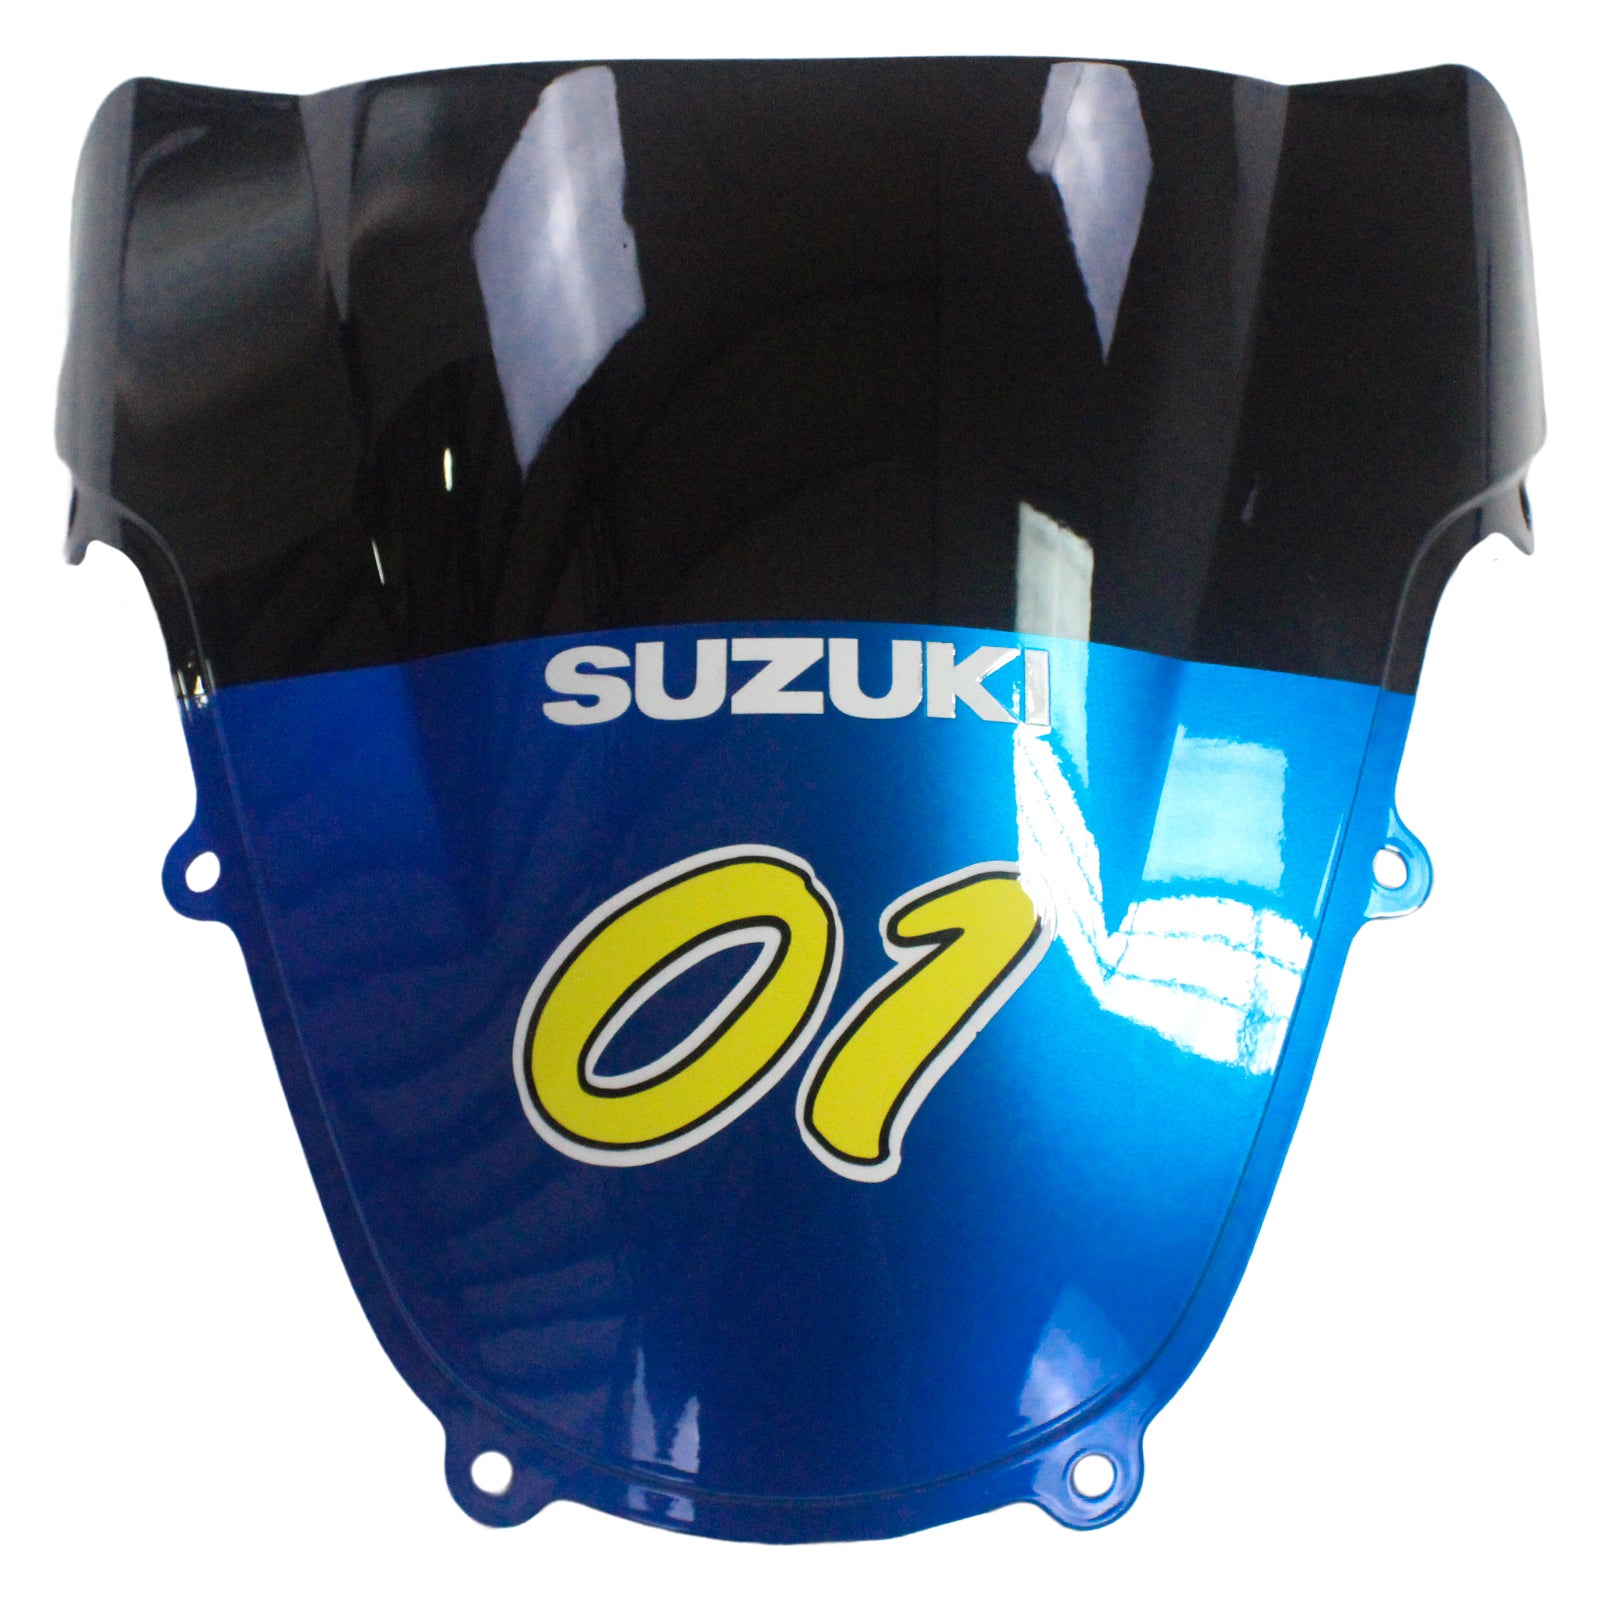 Amotopart Suzuki 01-03 GSXR600 &amp; 00-03 GSXR750 Verkleidung Motul blau gelb Kit